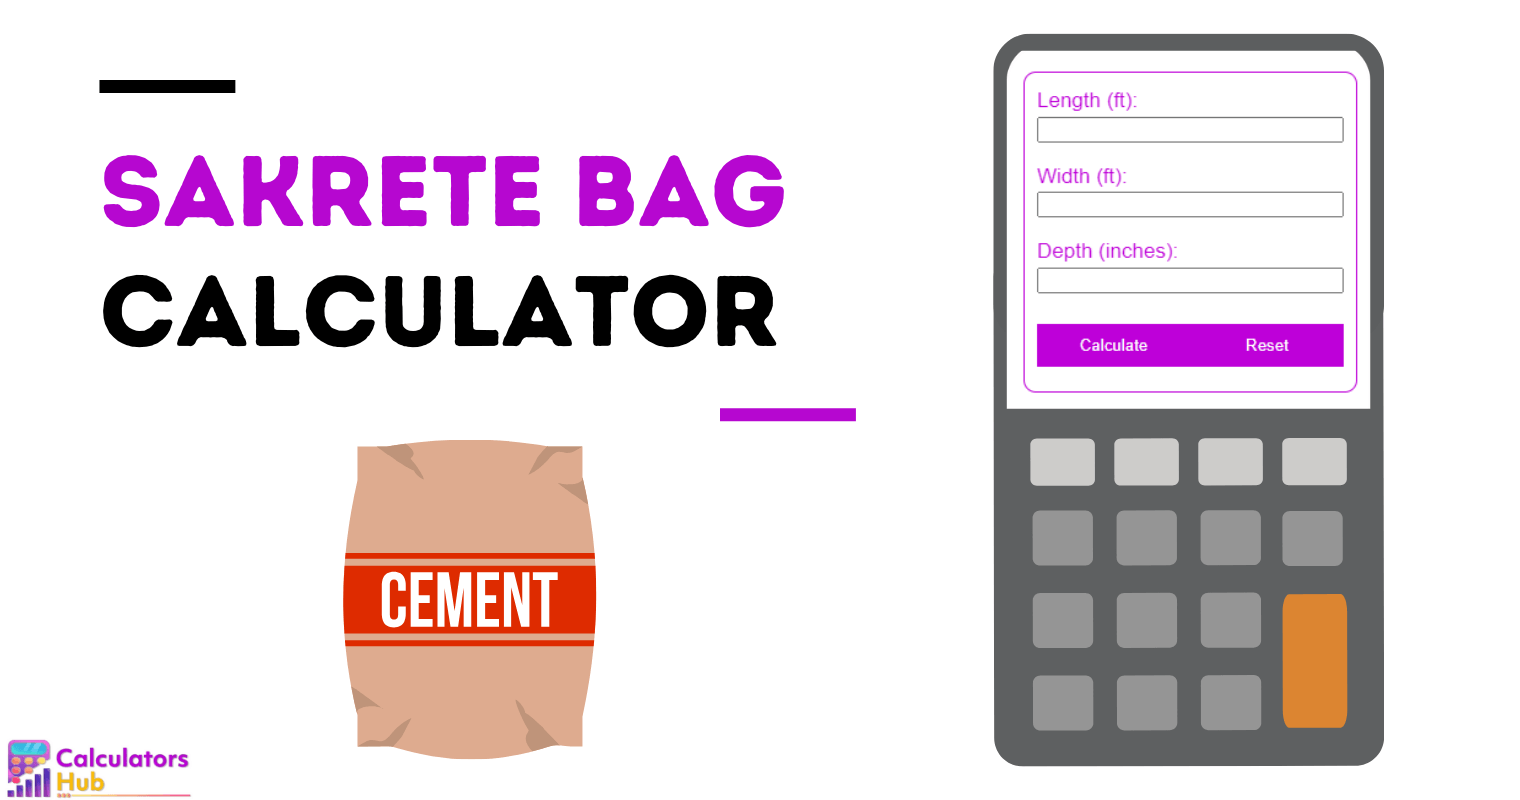 Sakrete Bag Calculator